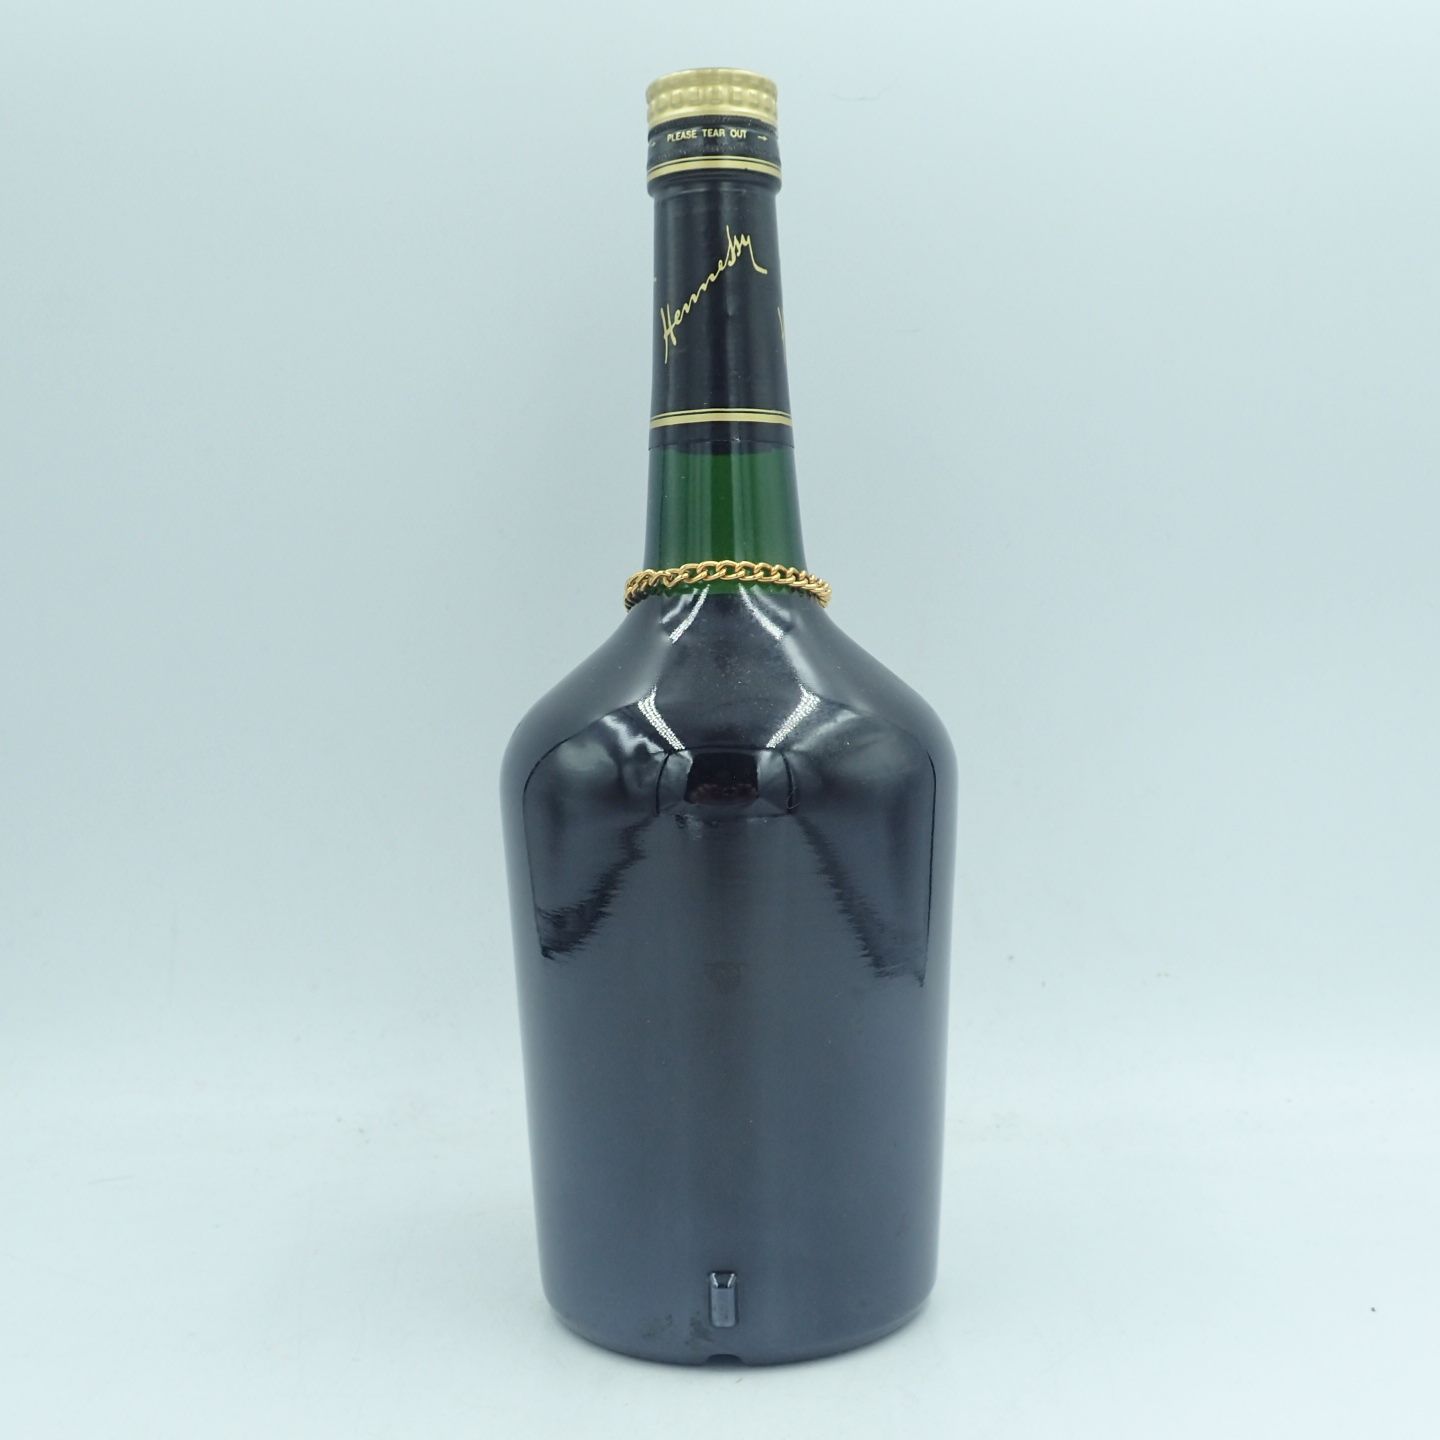 ヘネシー ナポレオン ブラスドール 700ml 40％ Hennesy【O】 - お酒の 